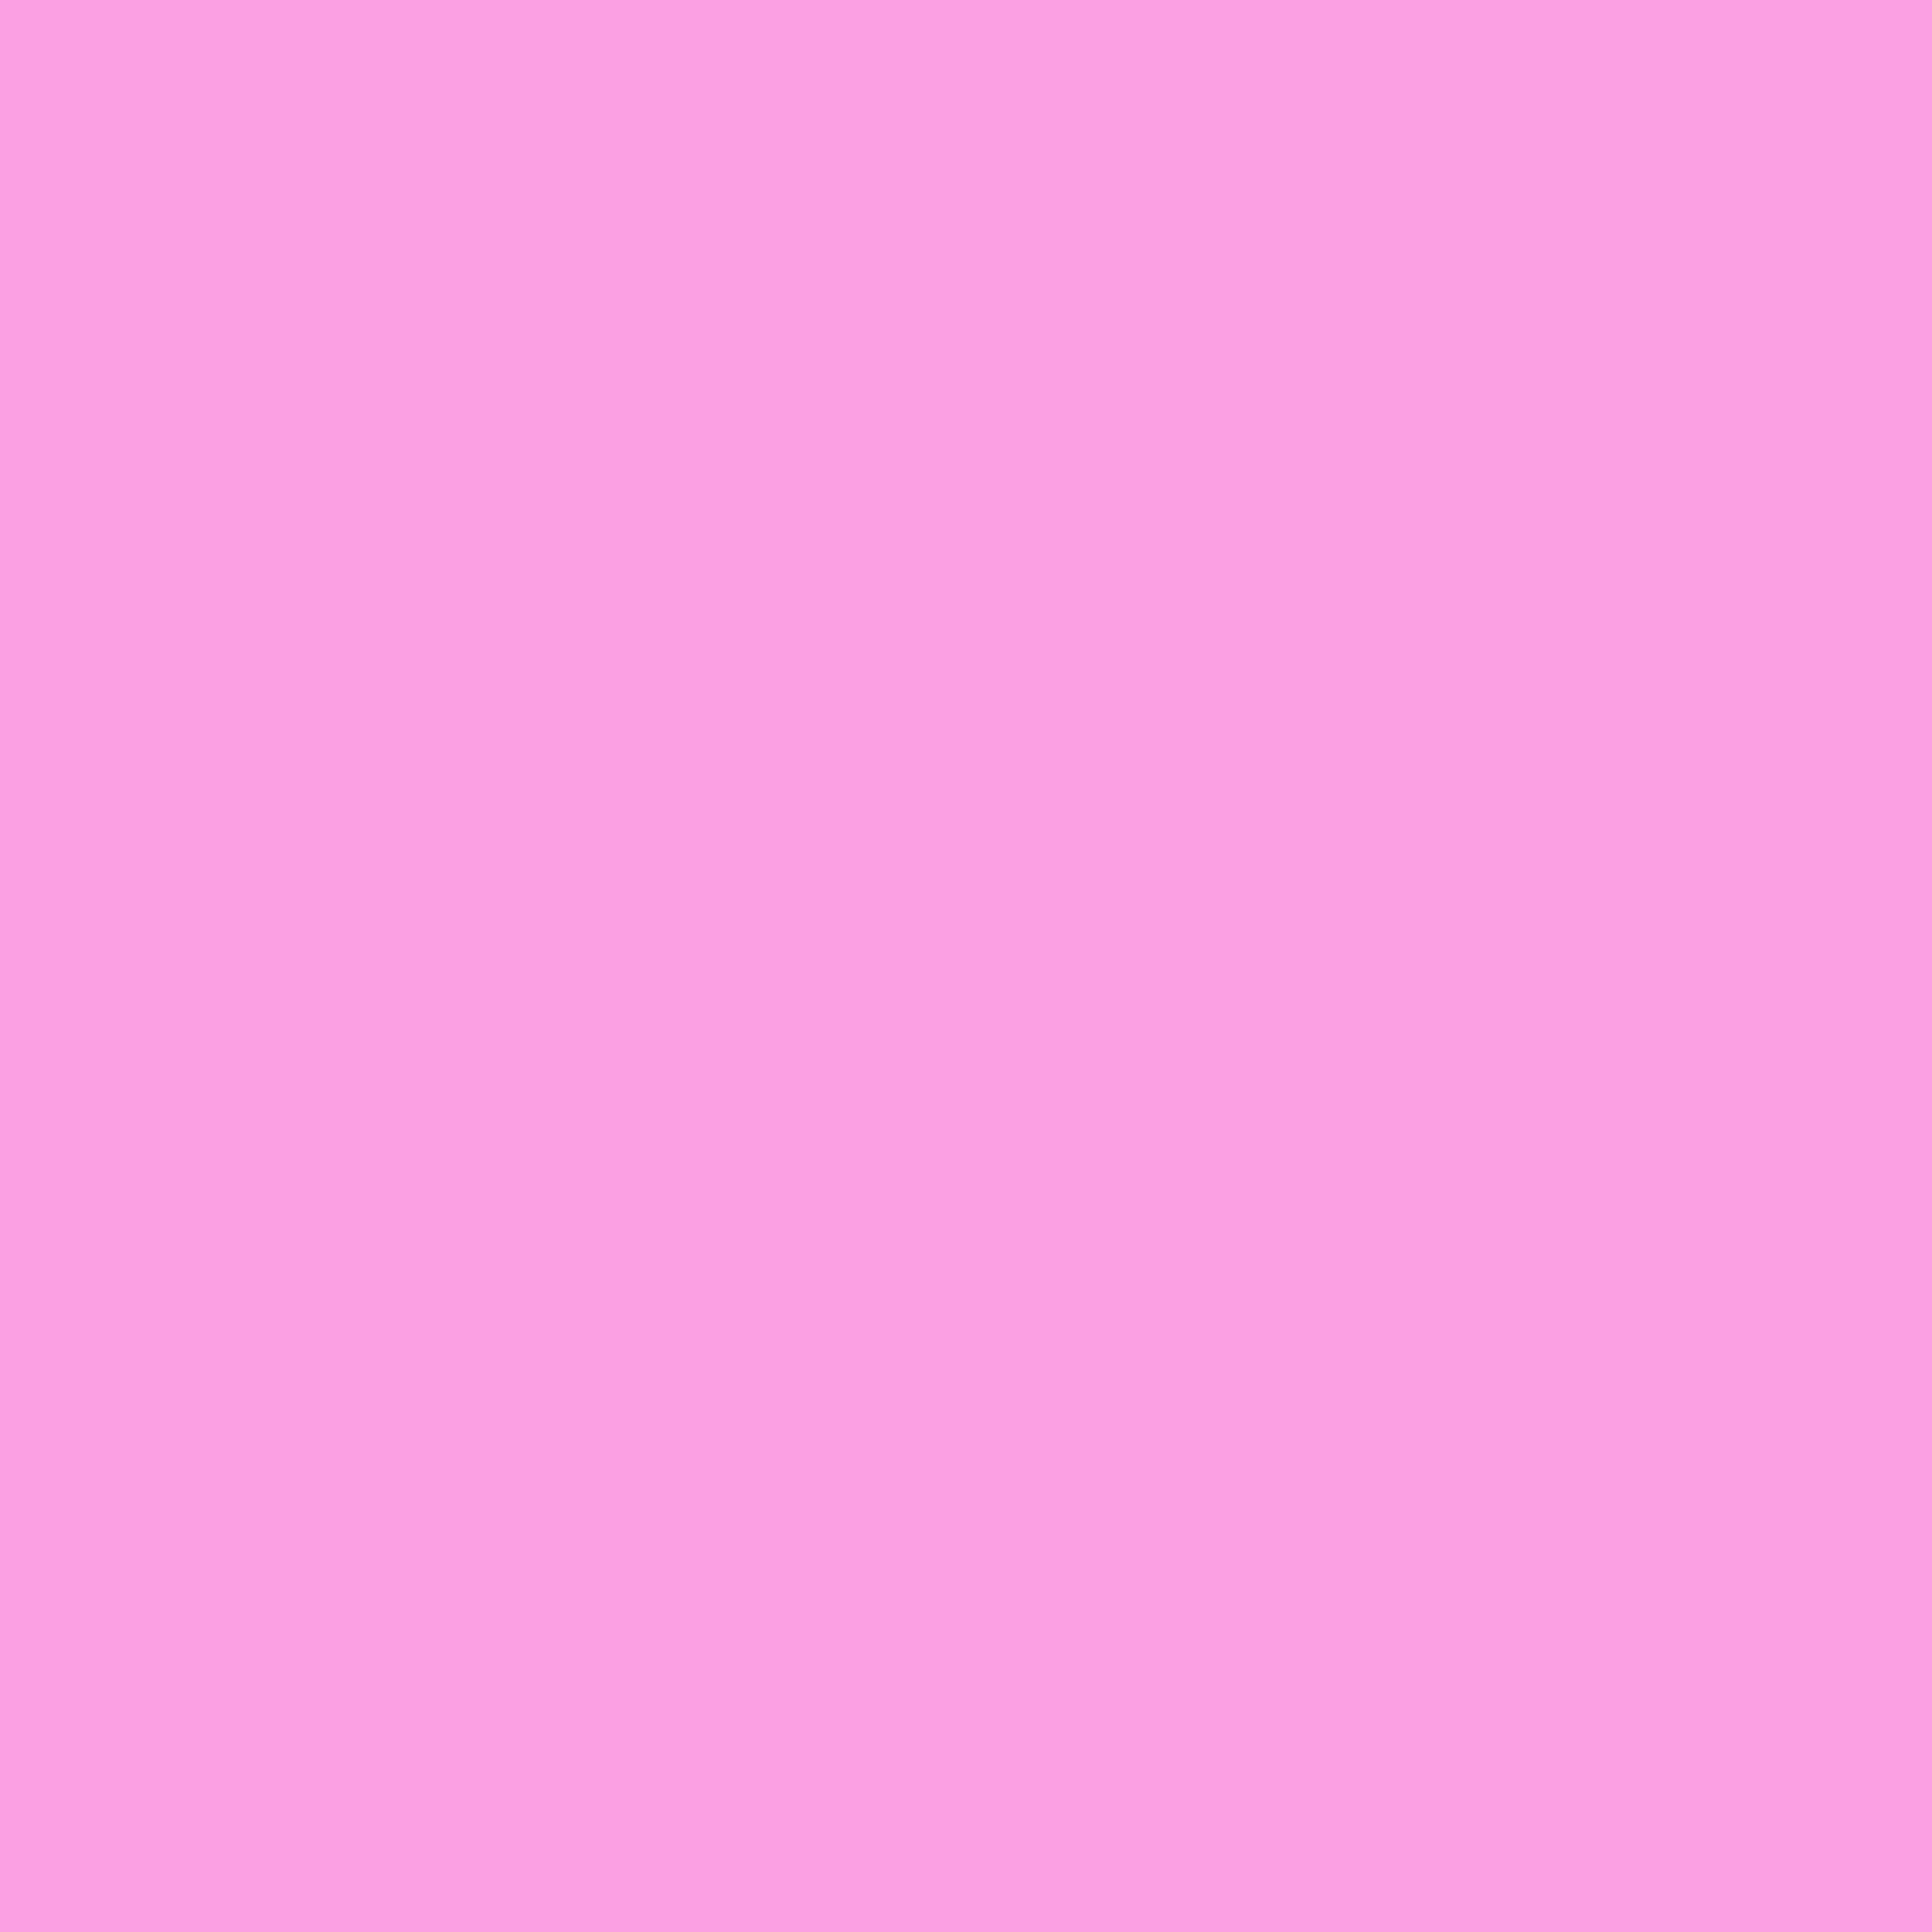 3600x3600 Lavender Rose Solid Color Background